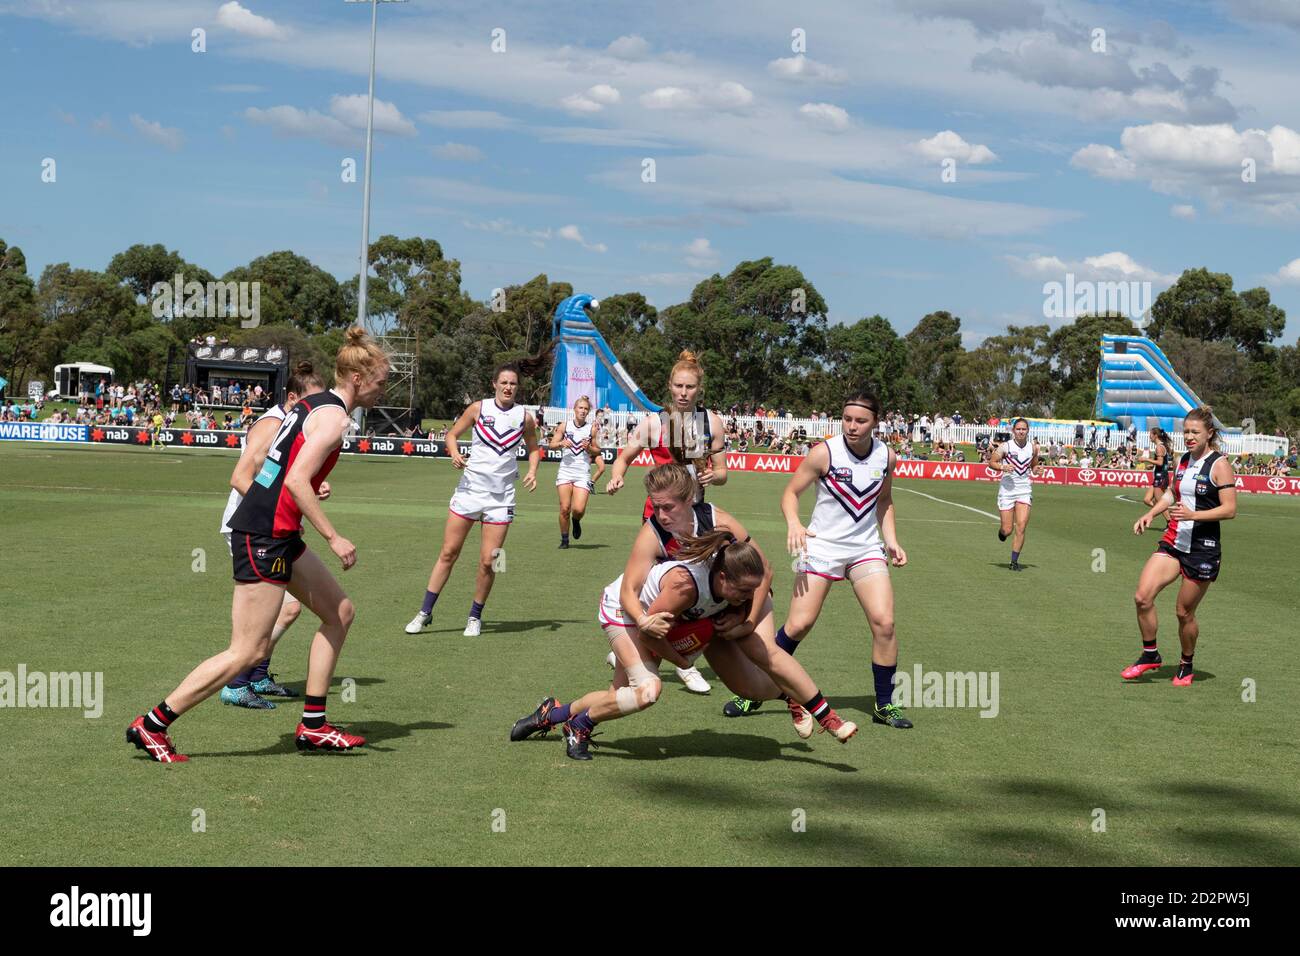 Un giocatore viene affrontato durante una partita di calcio nella Football League australiana delle Donne. Foto Stock